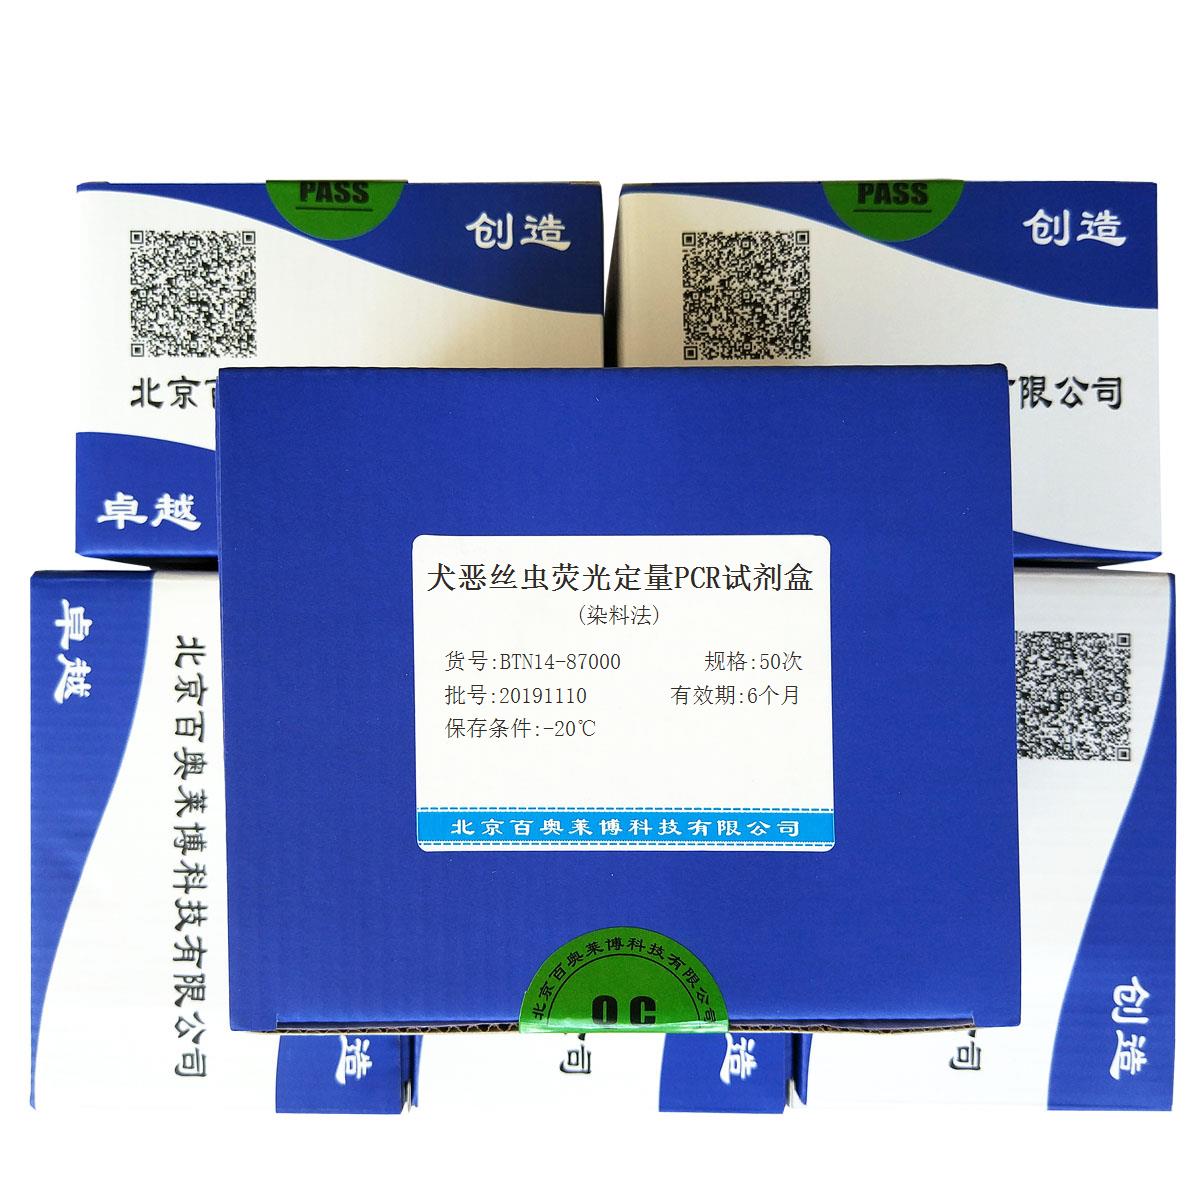 犬恶丝虫荧光定量PCR试剂盒(染料法)北京厂家